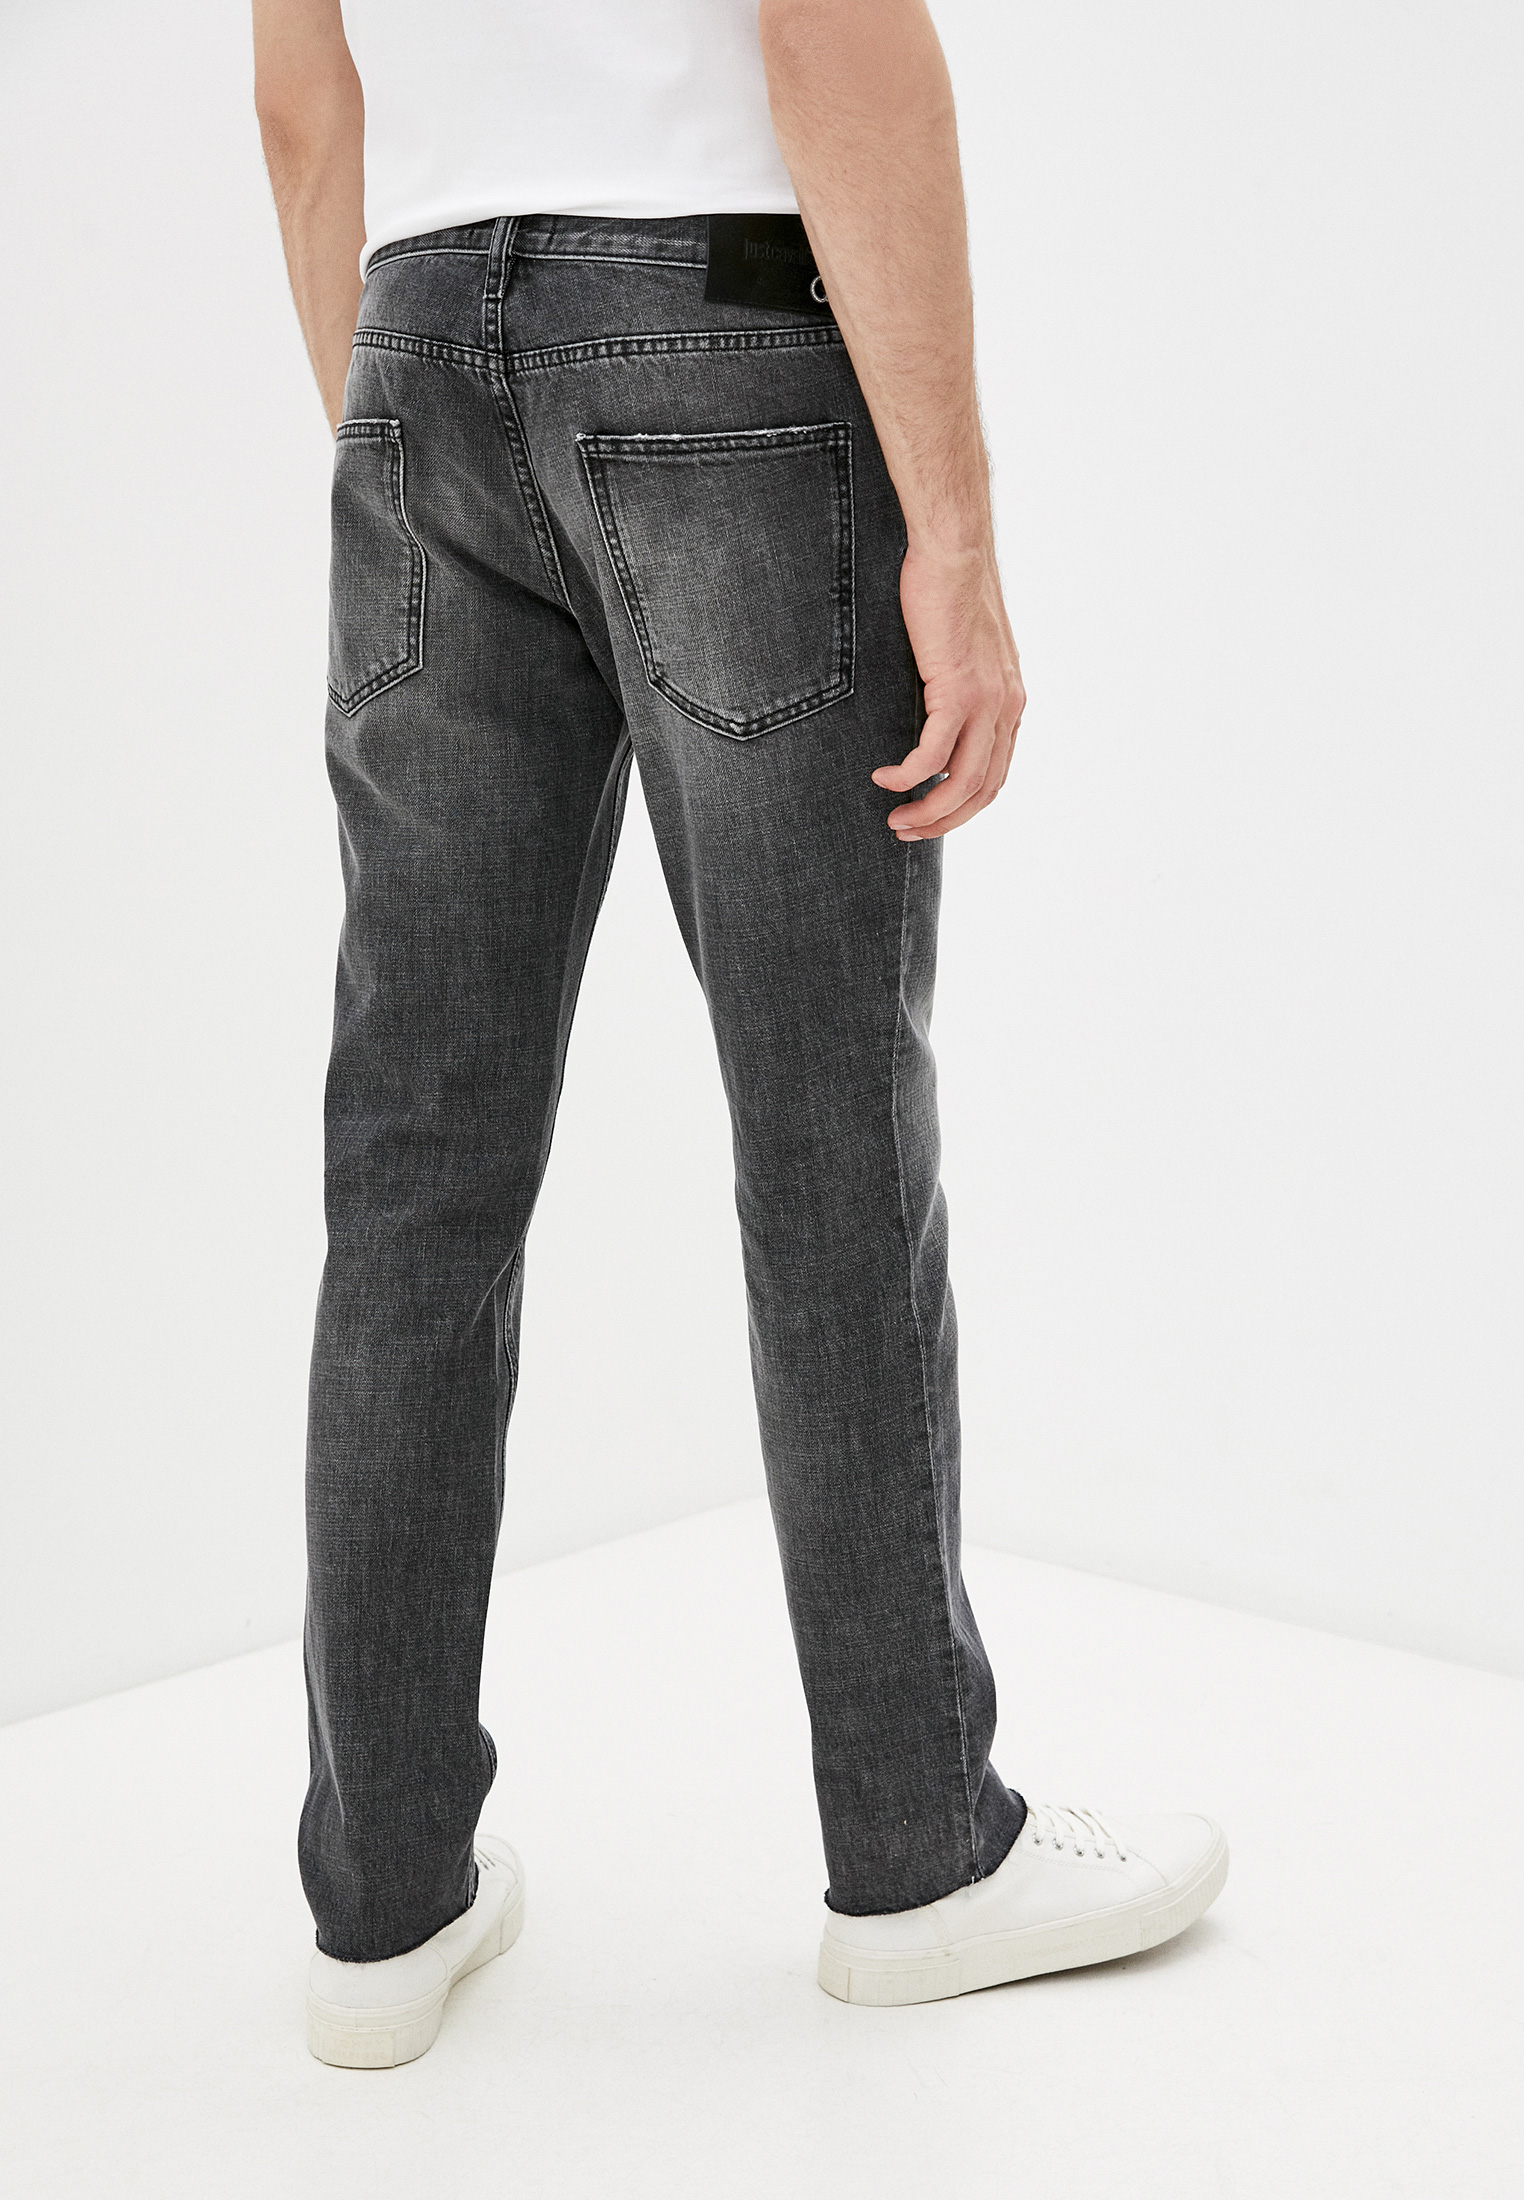 Мужские зауженные джинсы Just Cavalli (Джаст Кавалли) S03LA0116 N31773: изображение 4